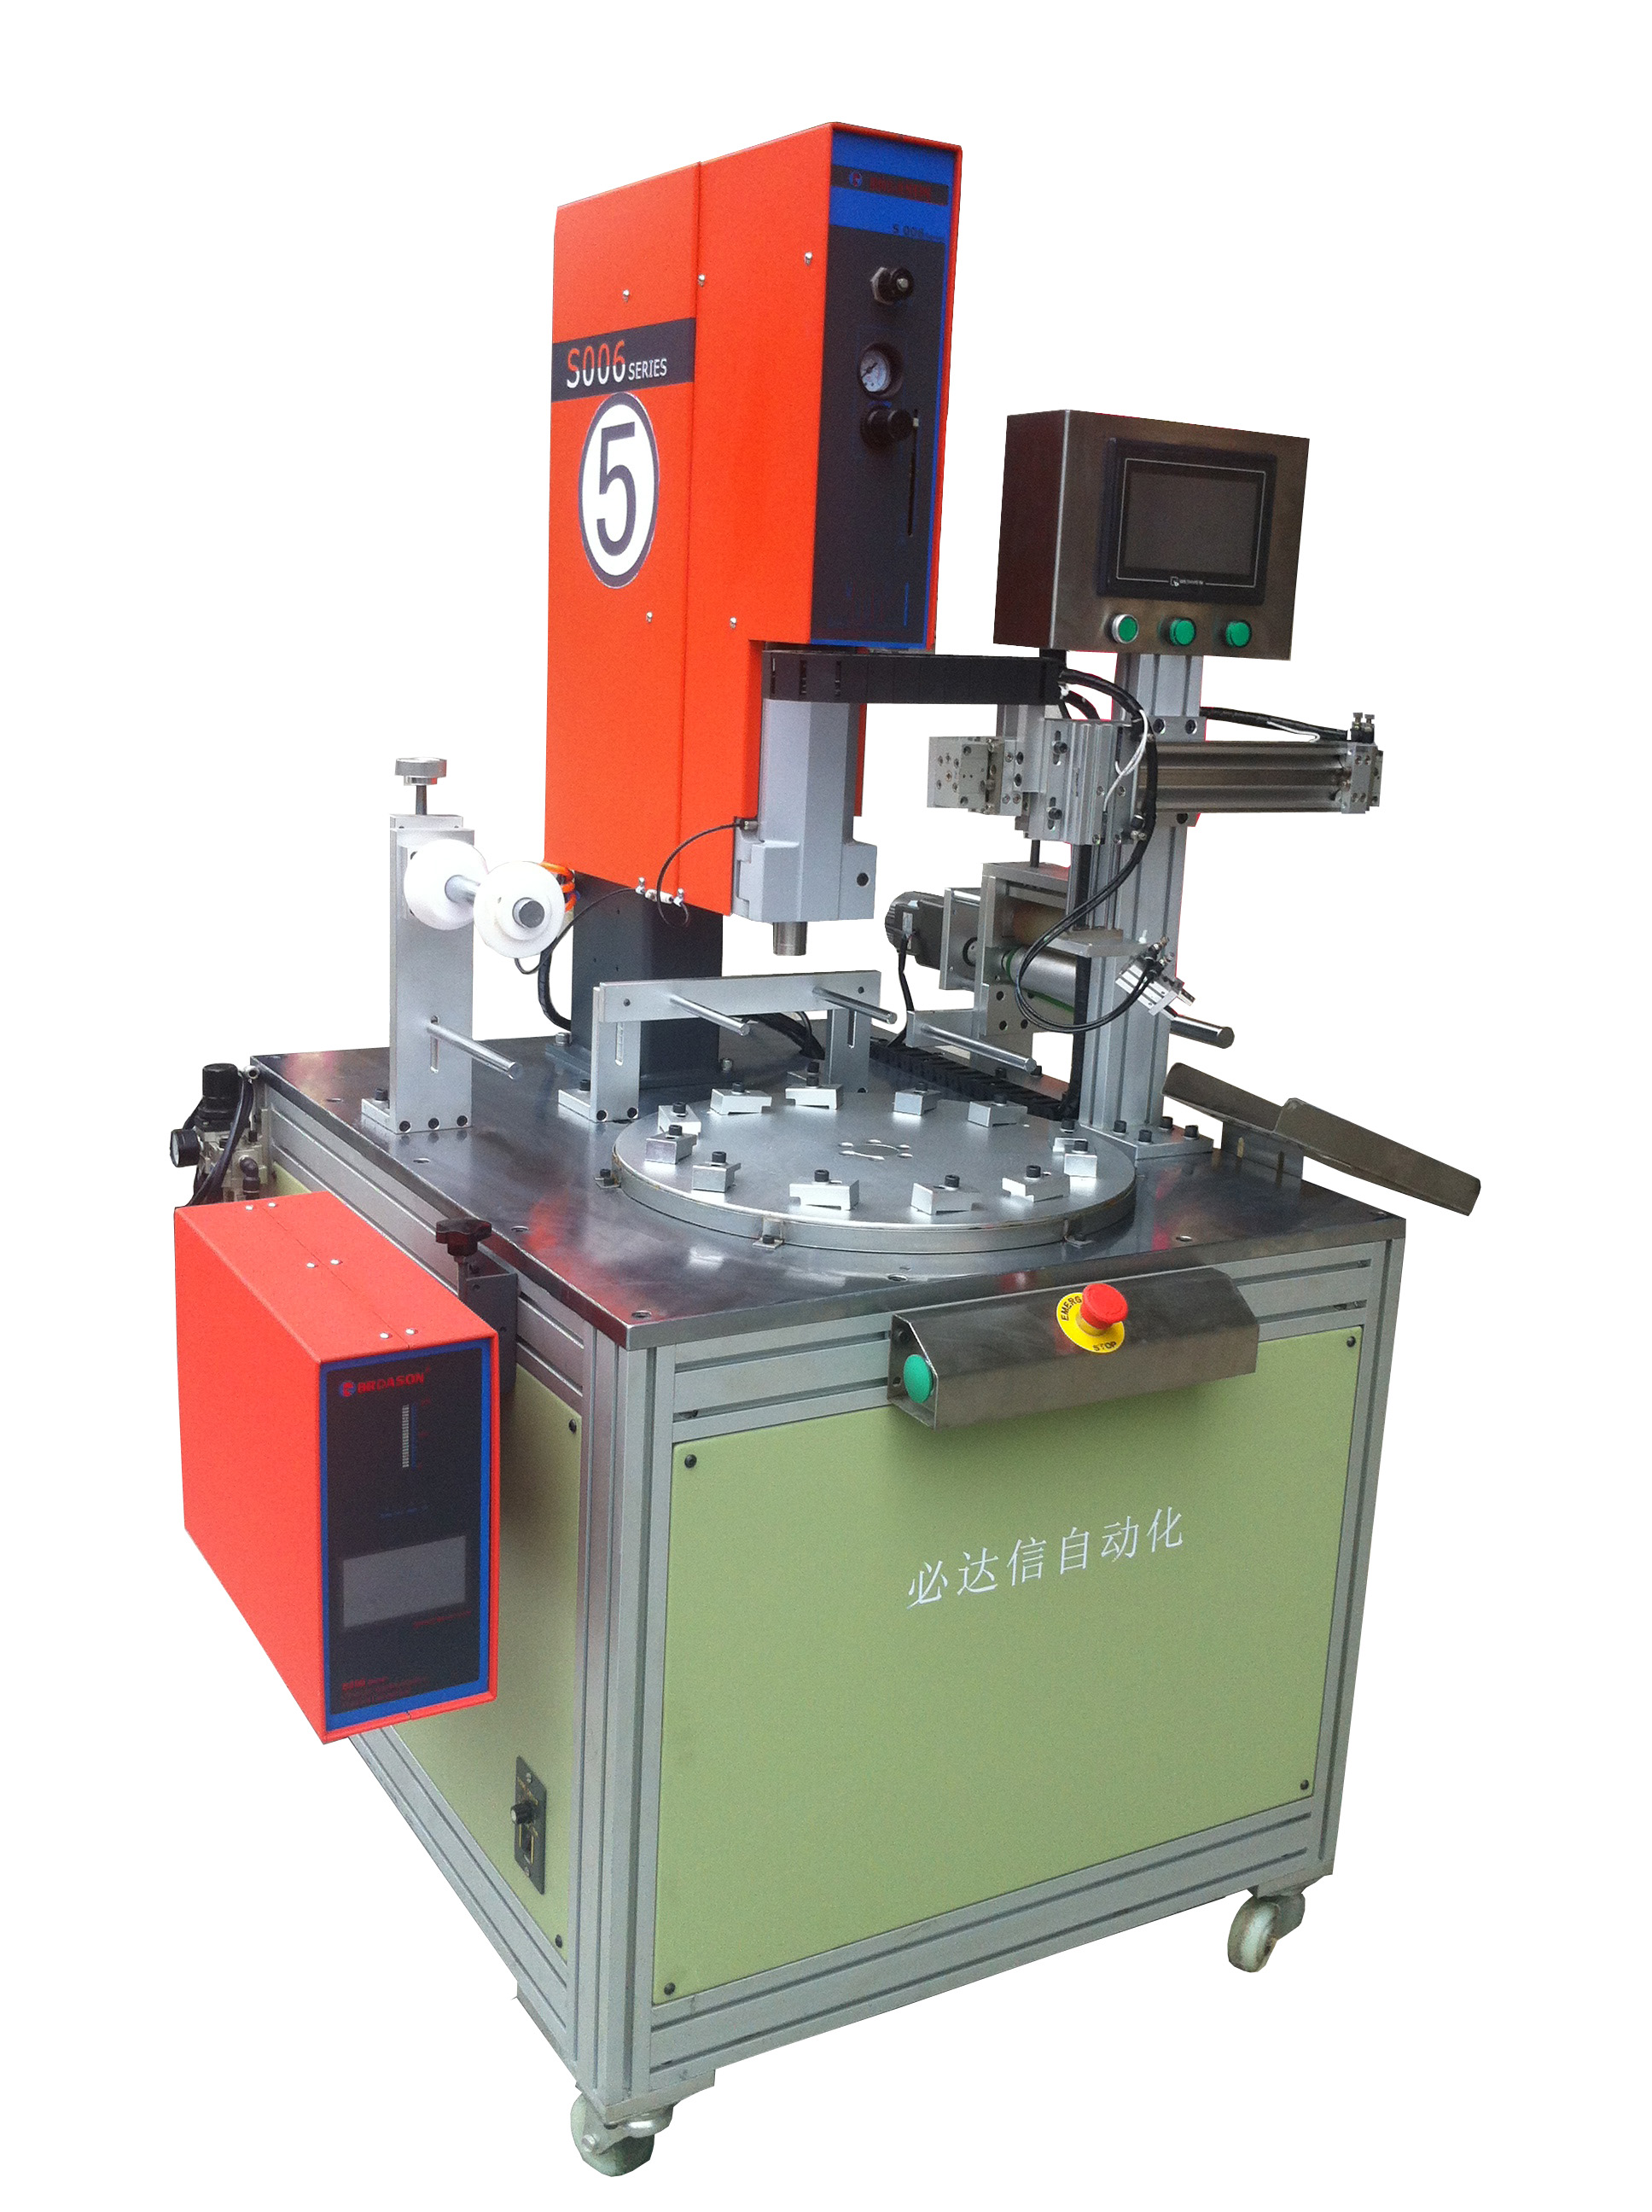 Rotary Ultrasonic Welding Machine